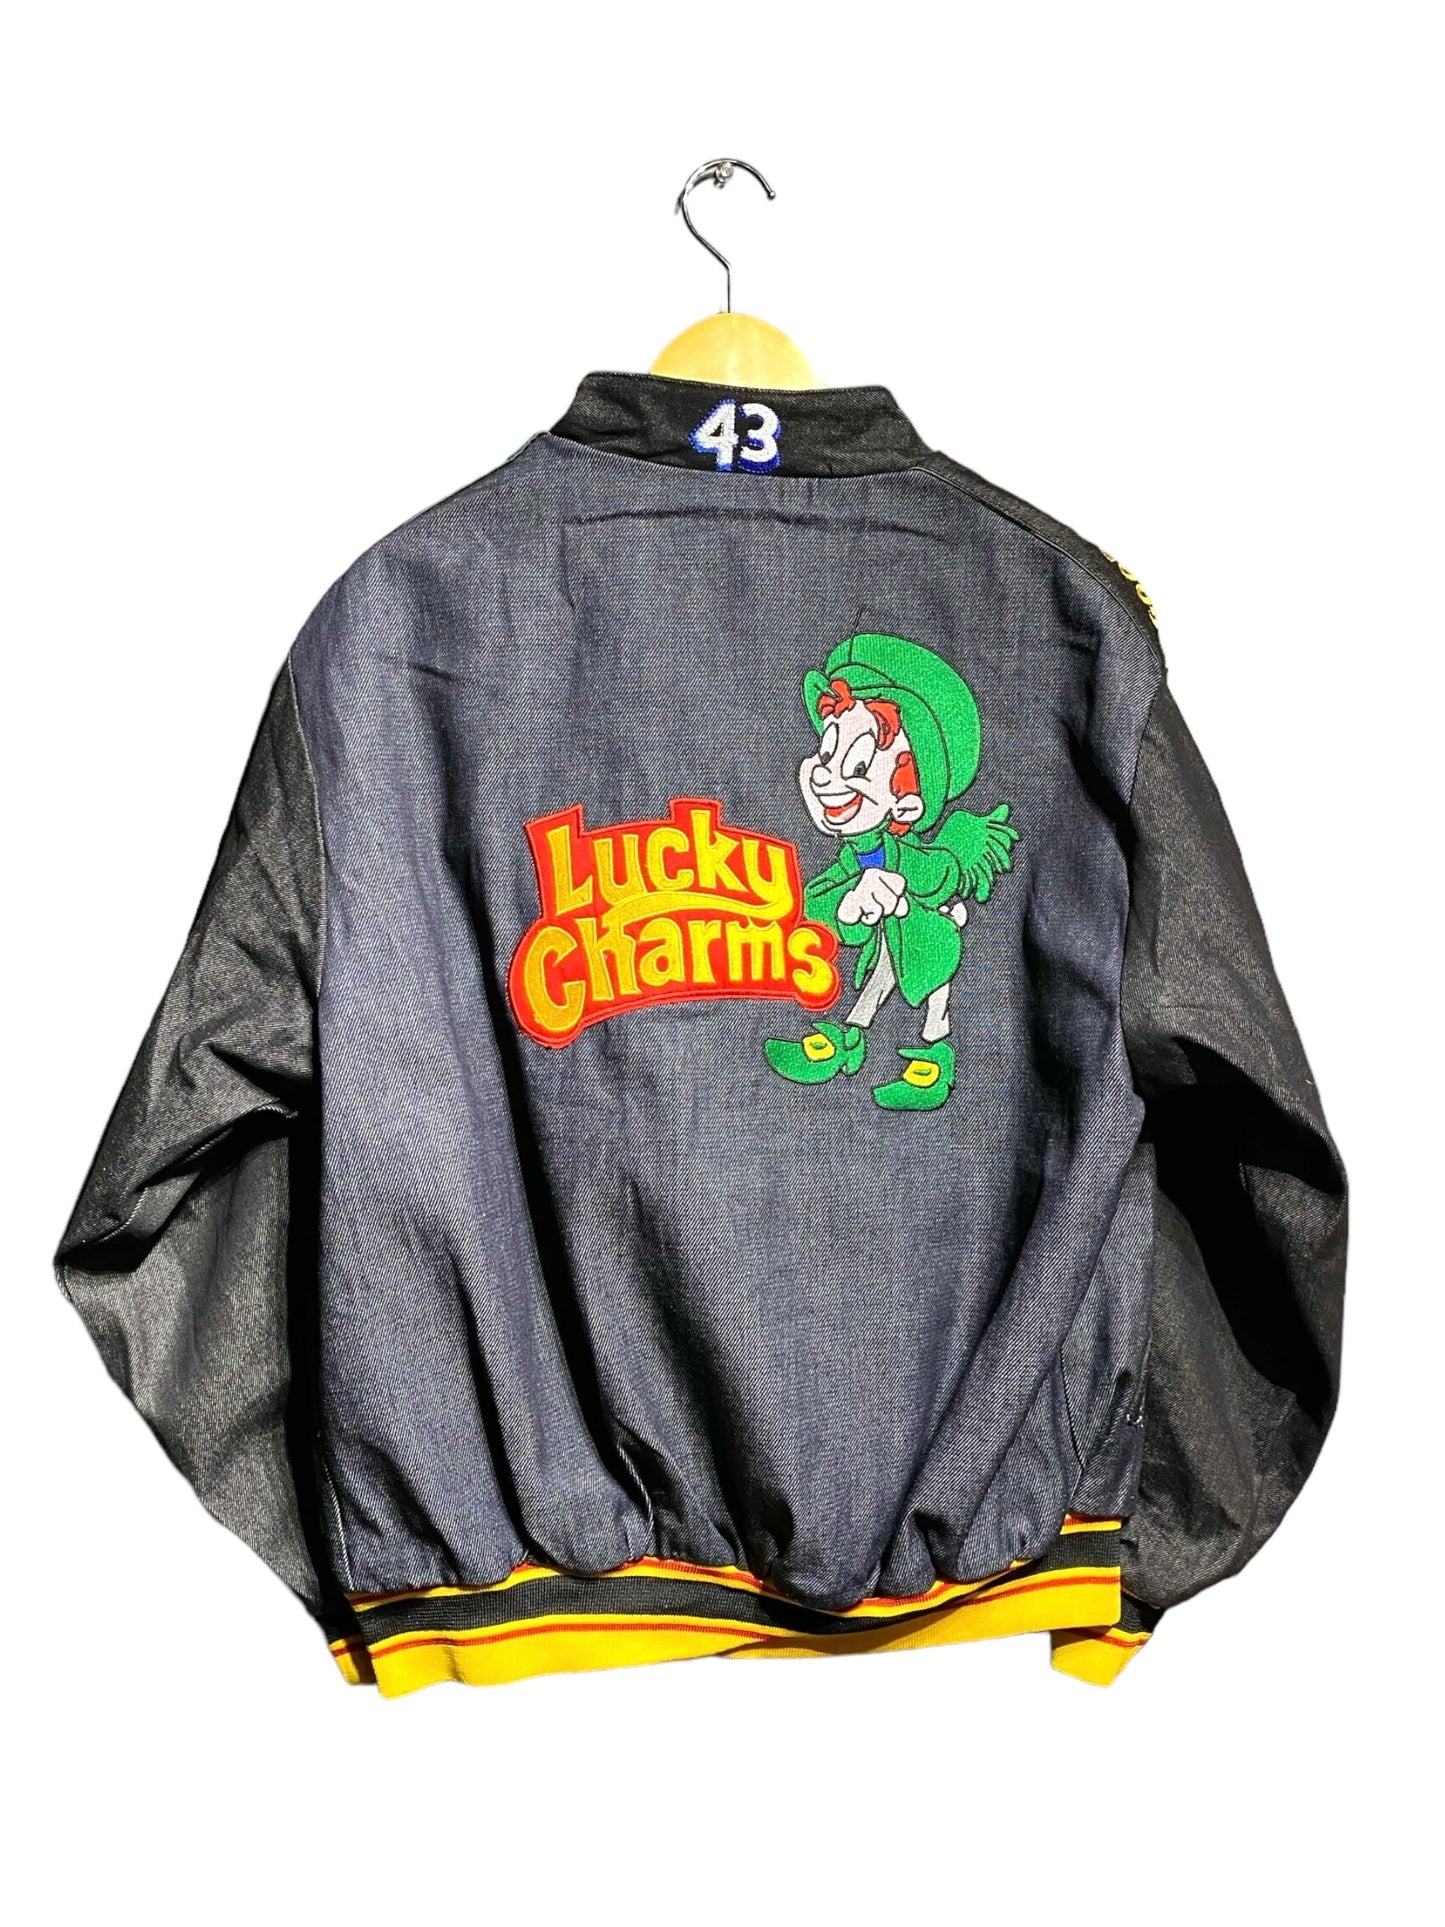 レーシングジャケット Racing Jacket ブートレグ ブート Lucky Charms